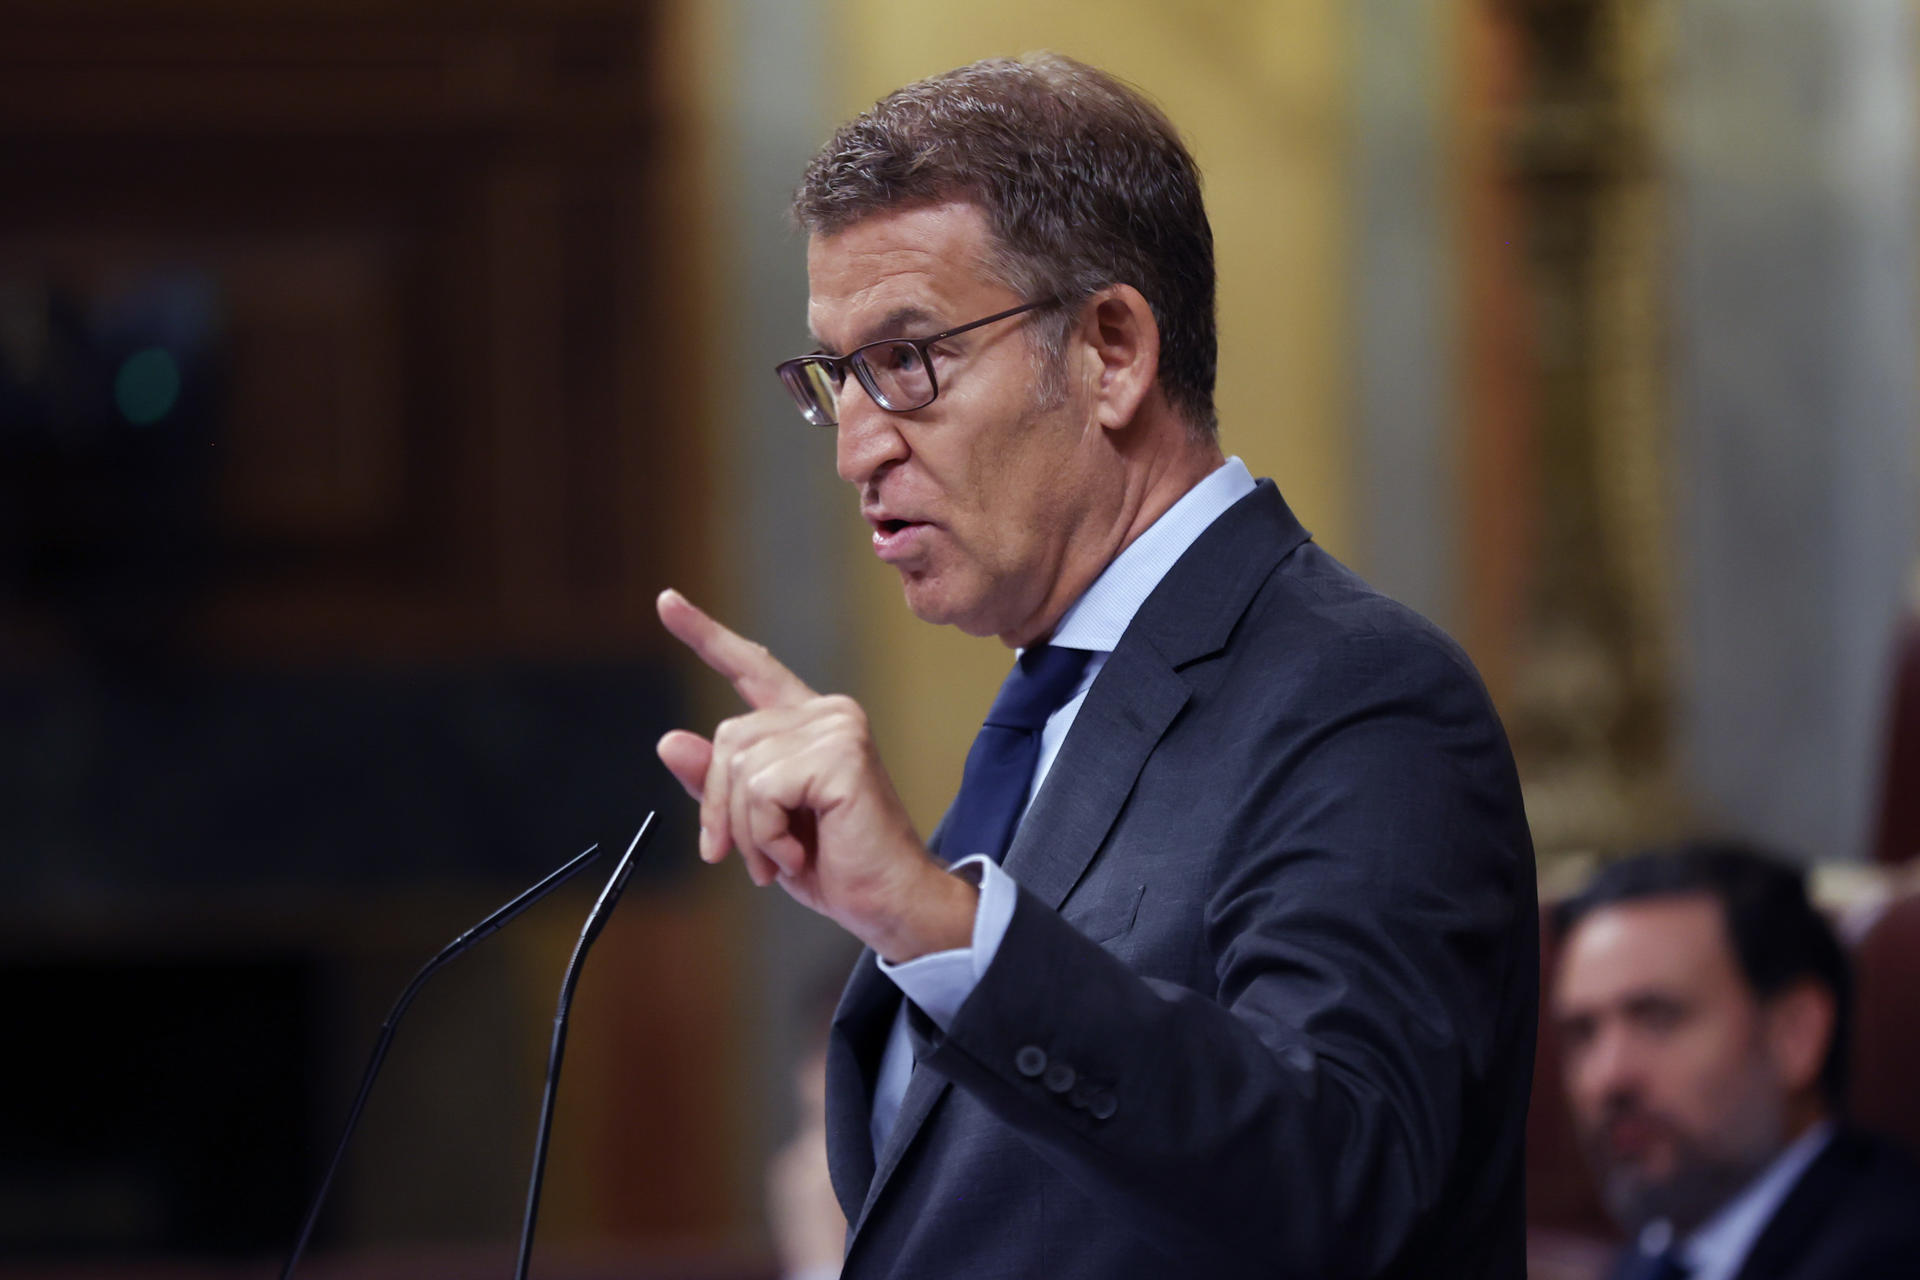 Feijóo arremete contra Sánchez: “Cambiar votos por impunidad y comprar con dinero la presidencia es corrupción”